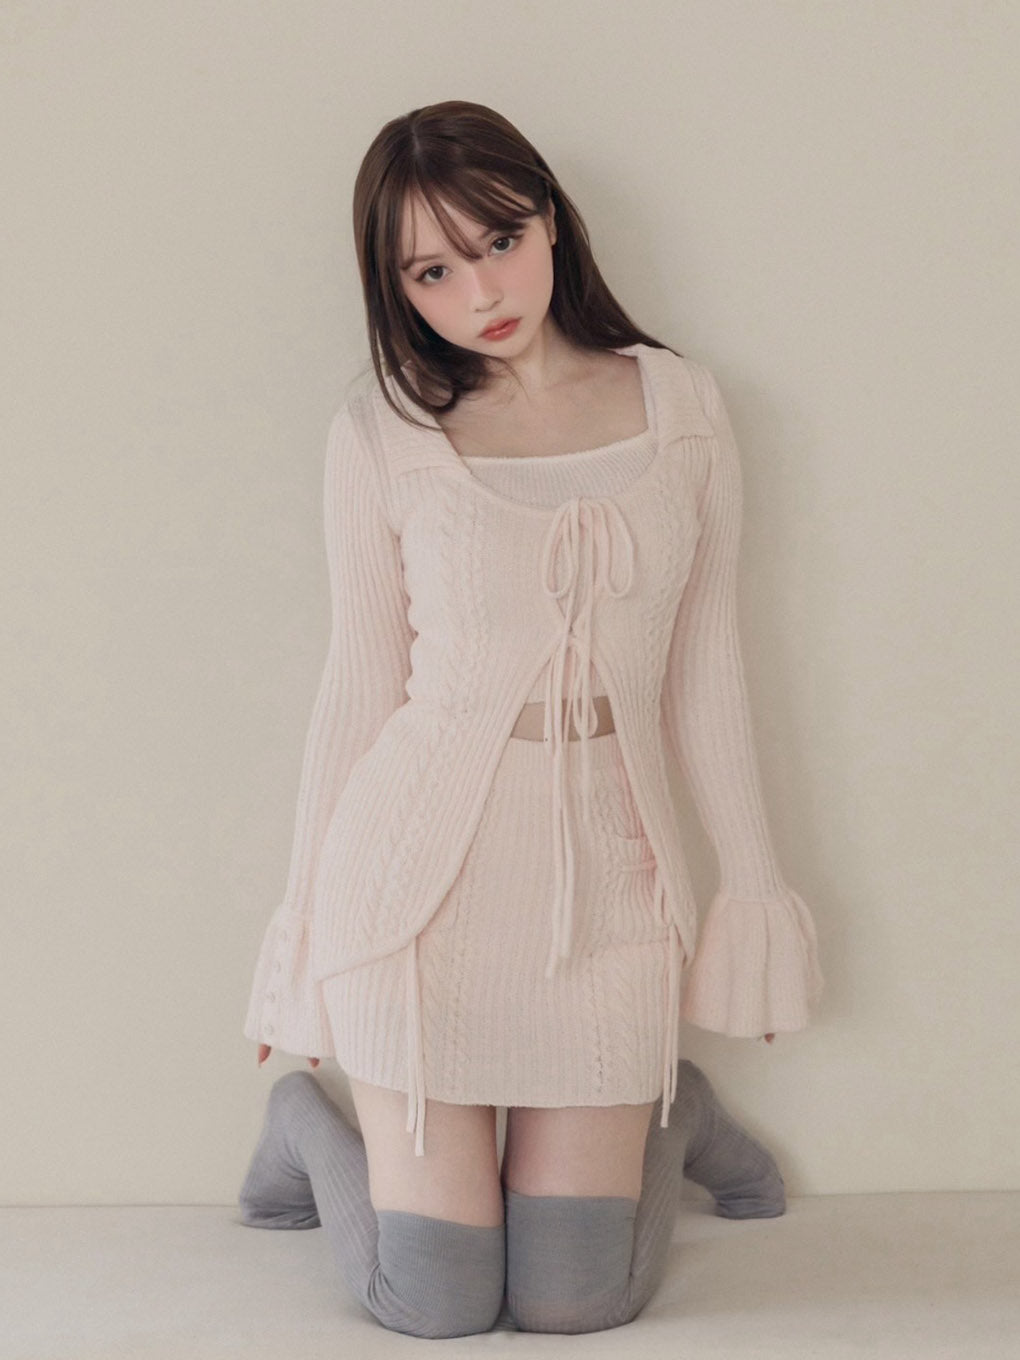 ☆大人気商品☆ 【andmary アンドマリー】 Abbie knit skirt スカート ...